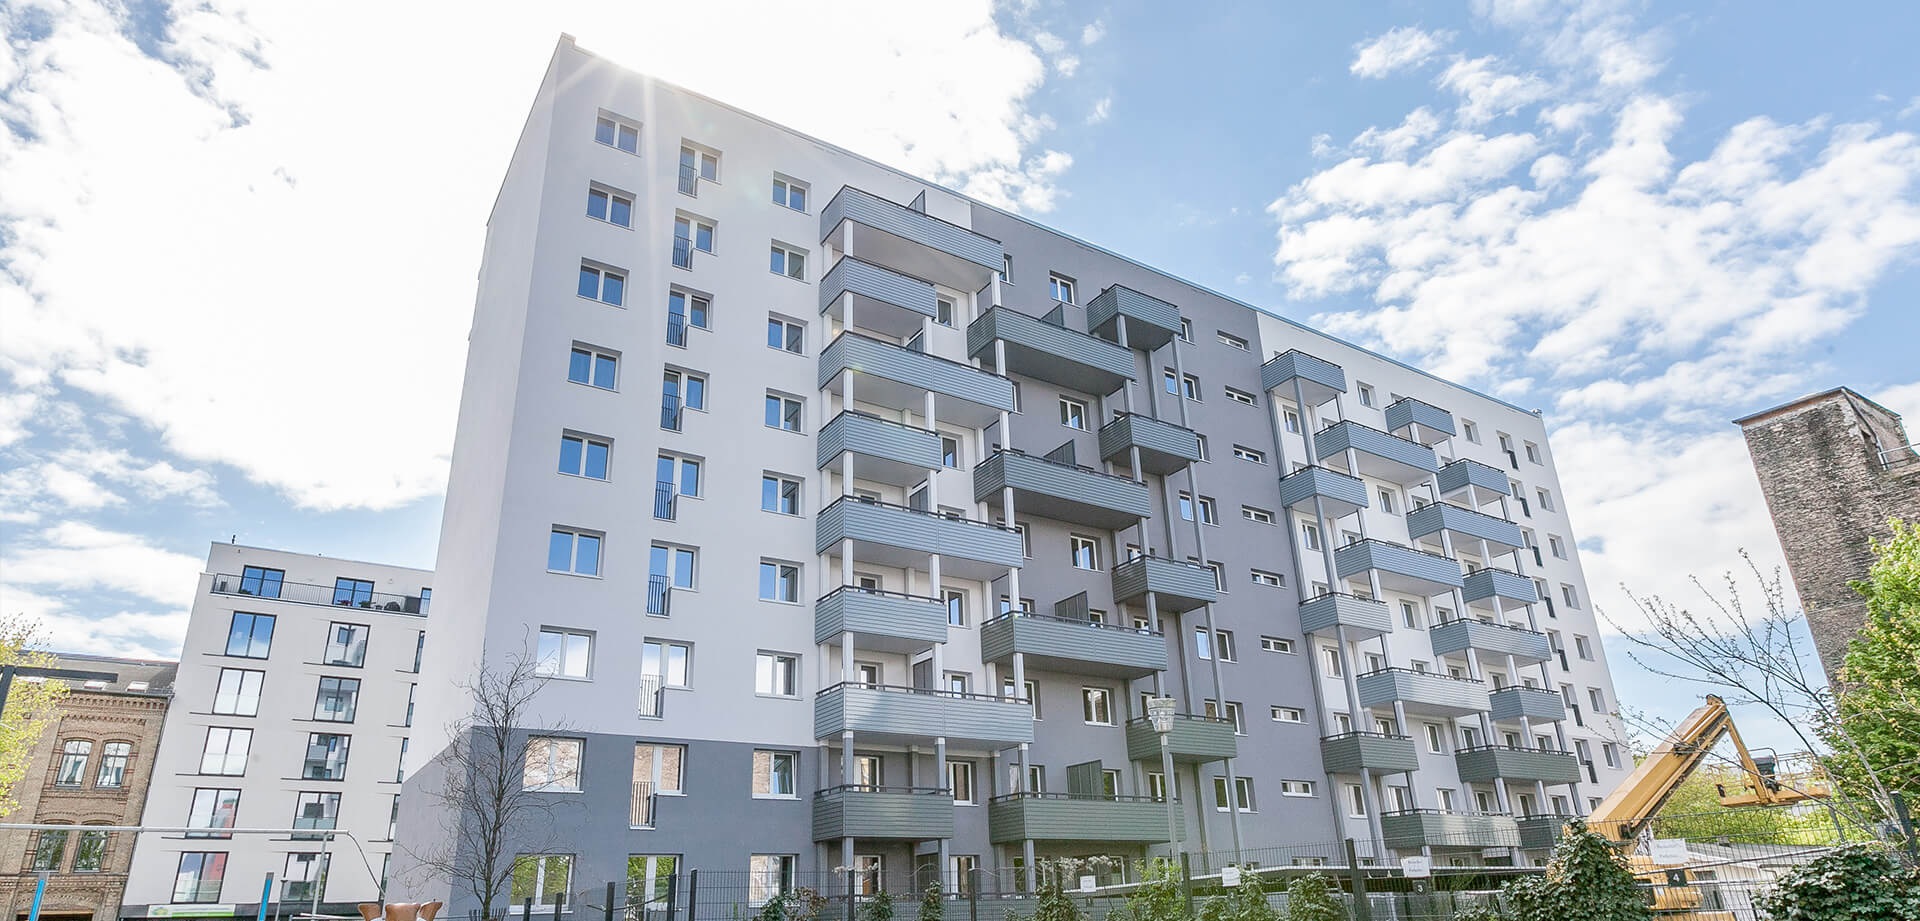 Так выглядит большинство домов со временным жильём в Берлине. Почти всегда это отреновированные советские панельки, коих тут осталось дофига